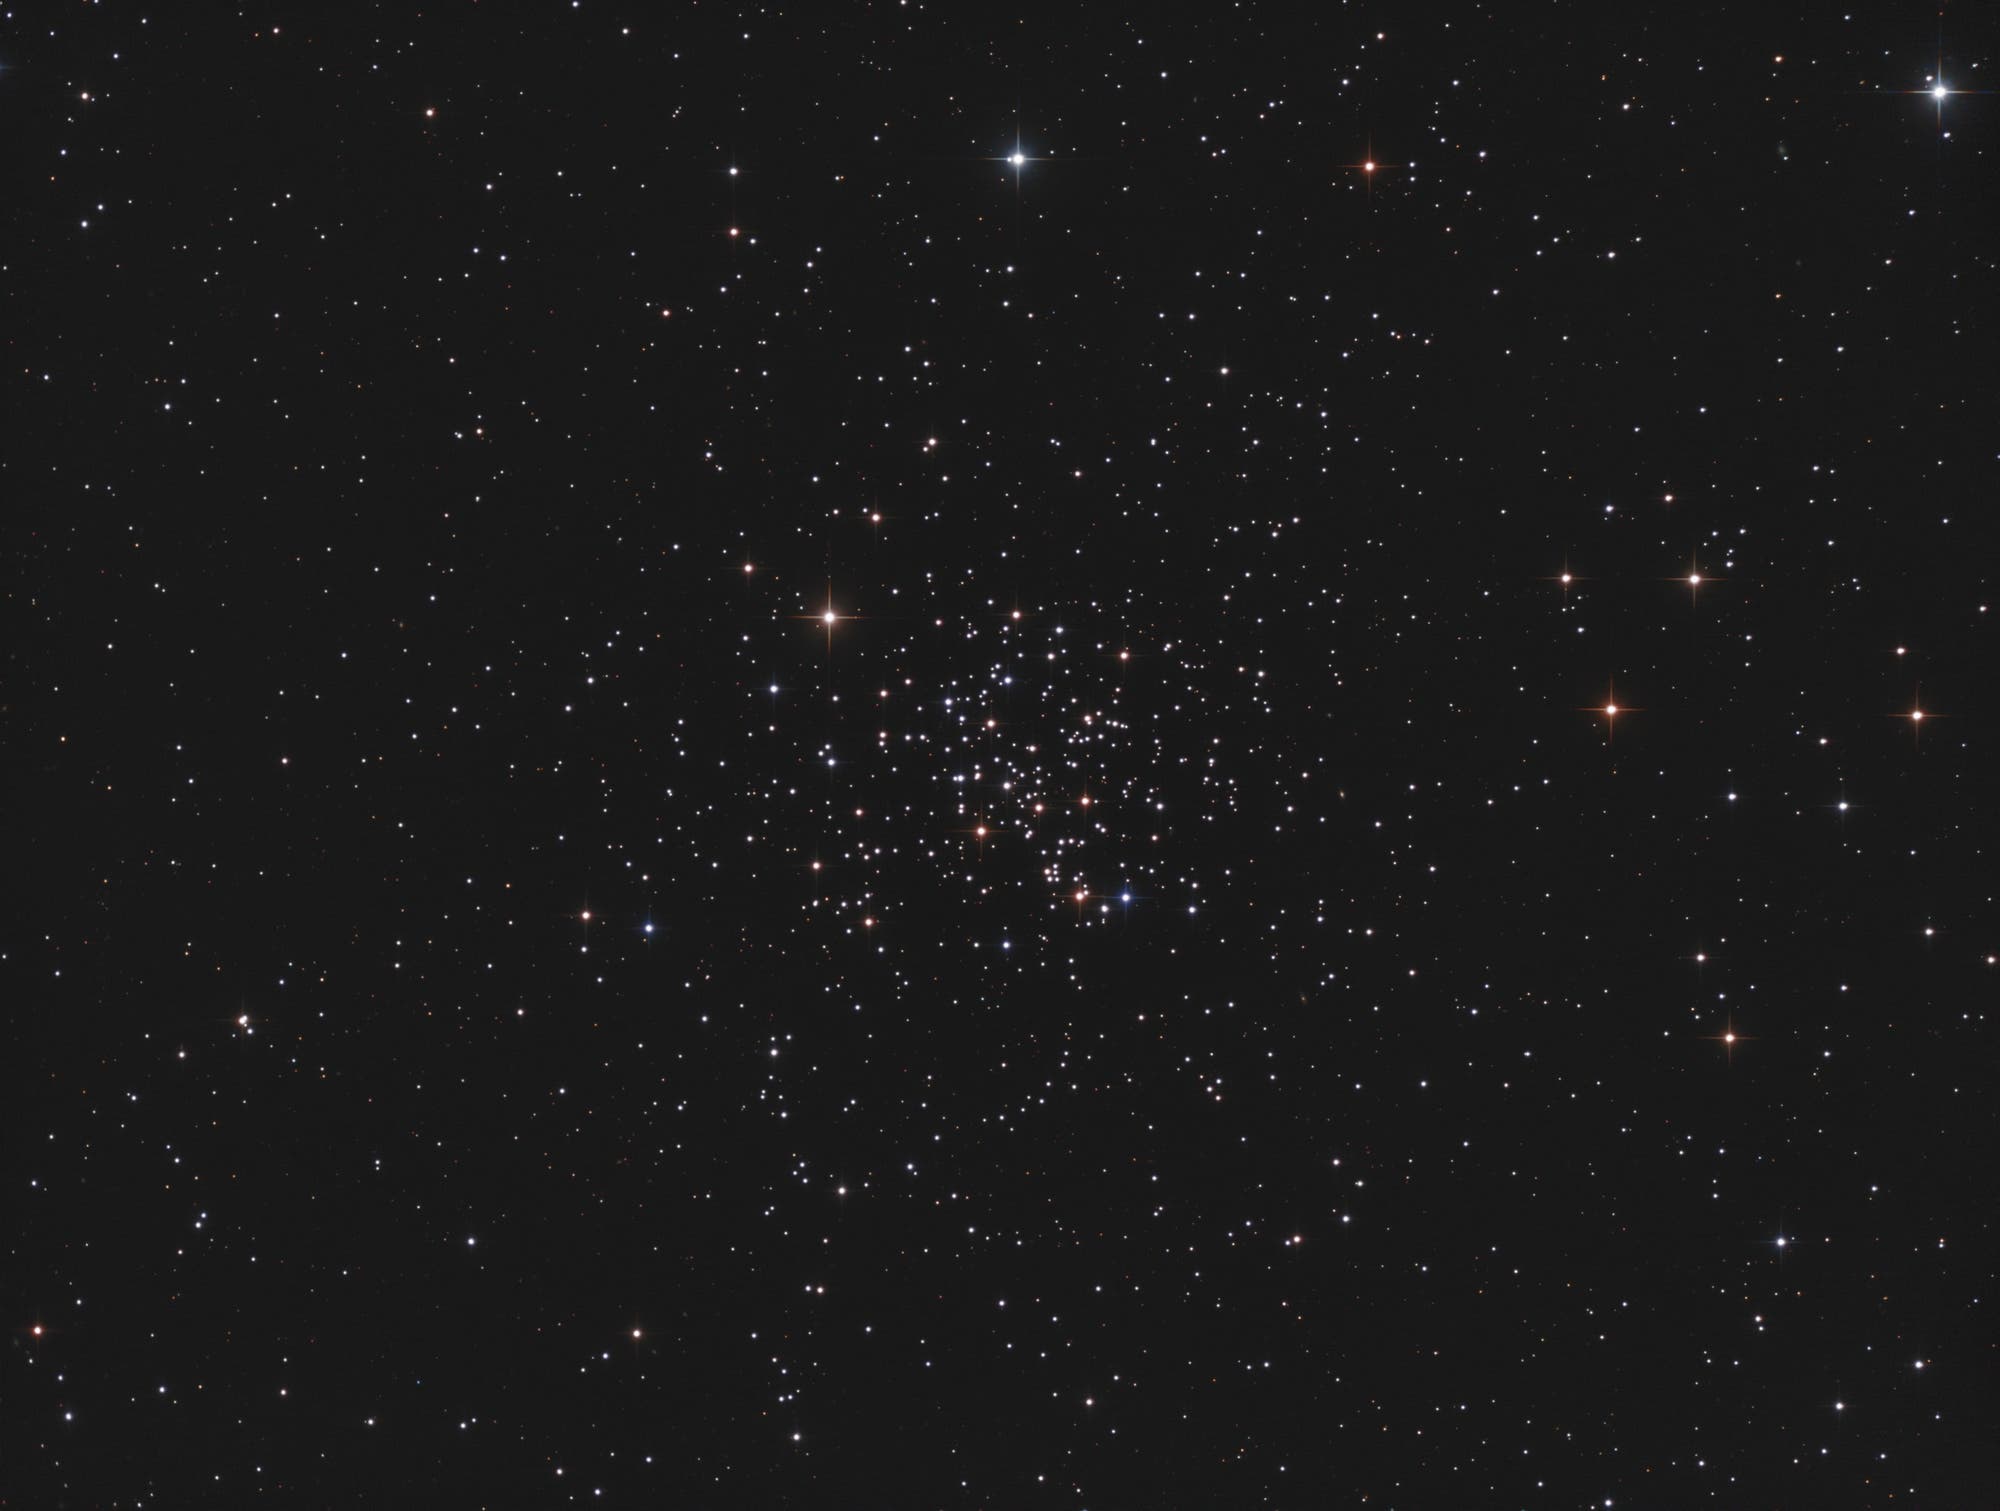 Messier 67, offener Sternhaufen